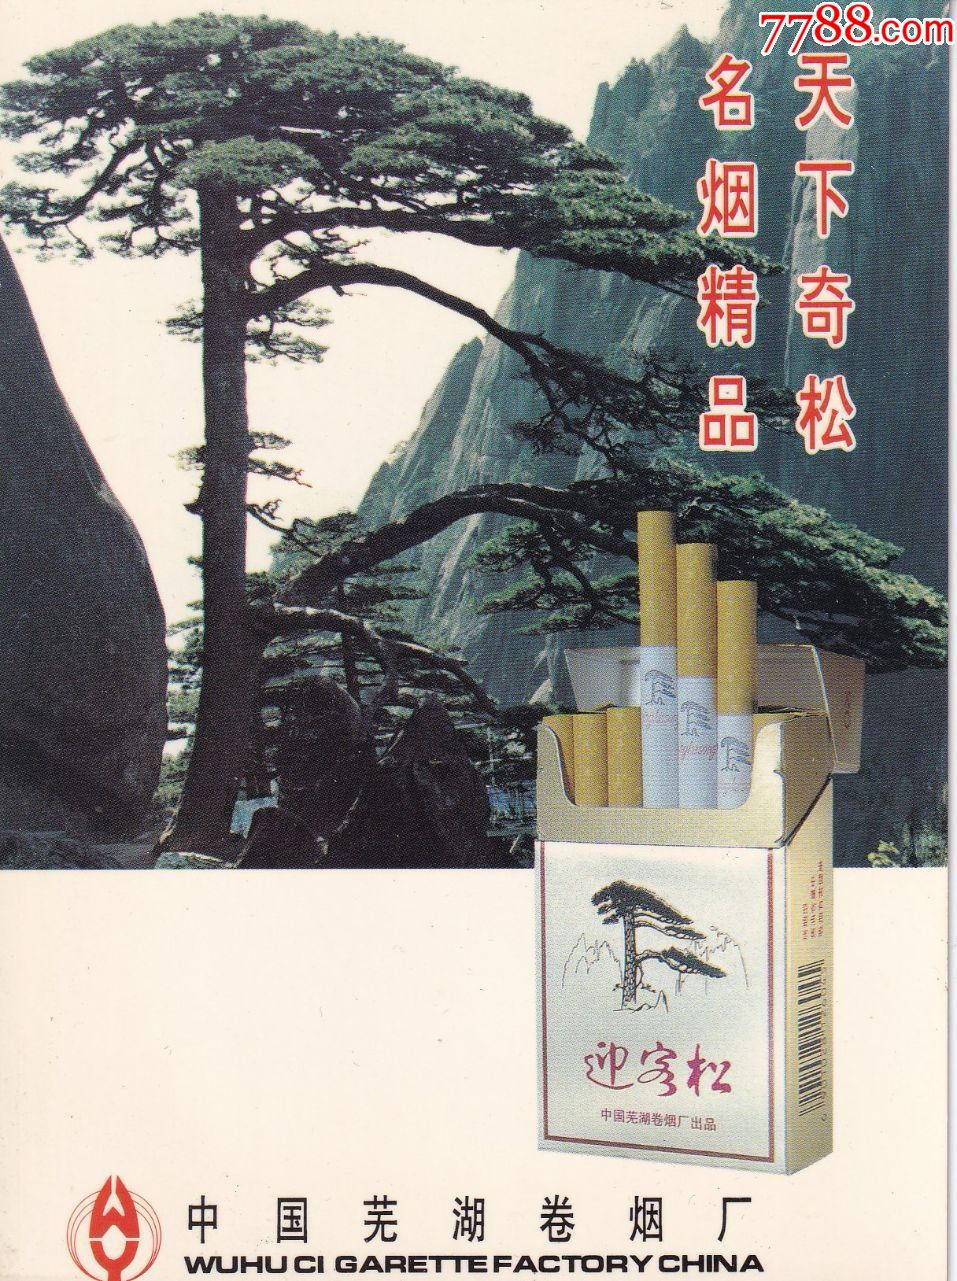 安徽省芜湖卷烟厂迎客松牌香烟商标大广告画卡正背面图(长14公分*宽